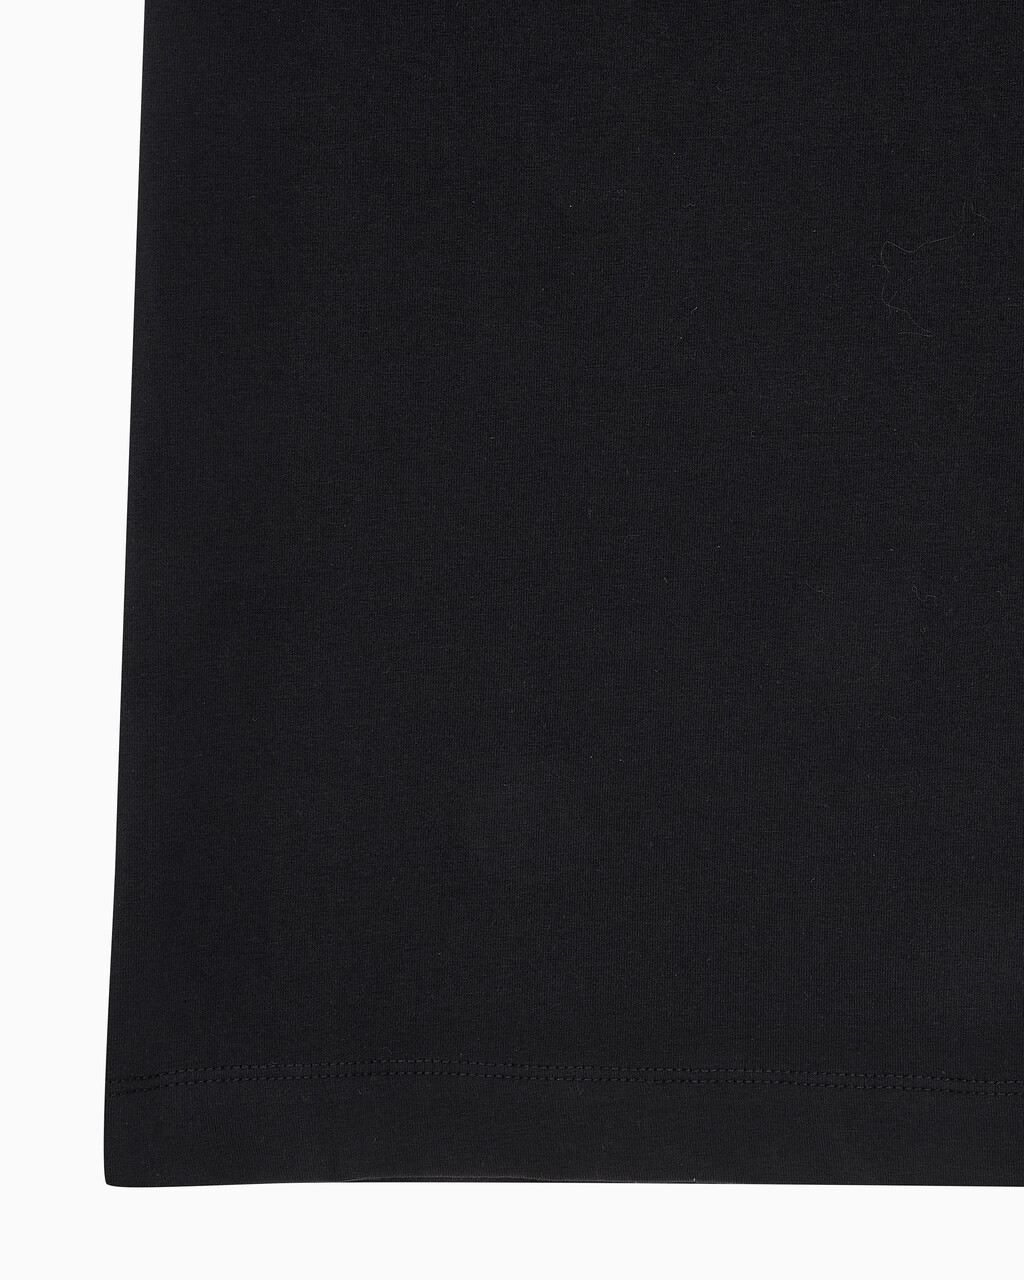 Buy 여성 레귤러핏 스몰 모노그램 로고 반팔 티셔츠  in color CK BLACK